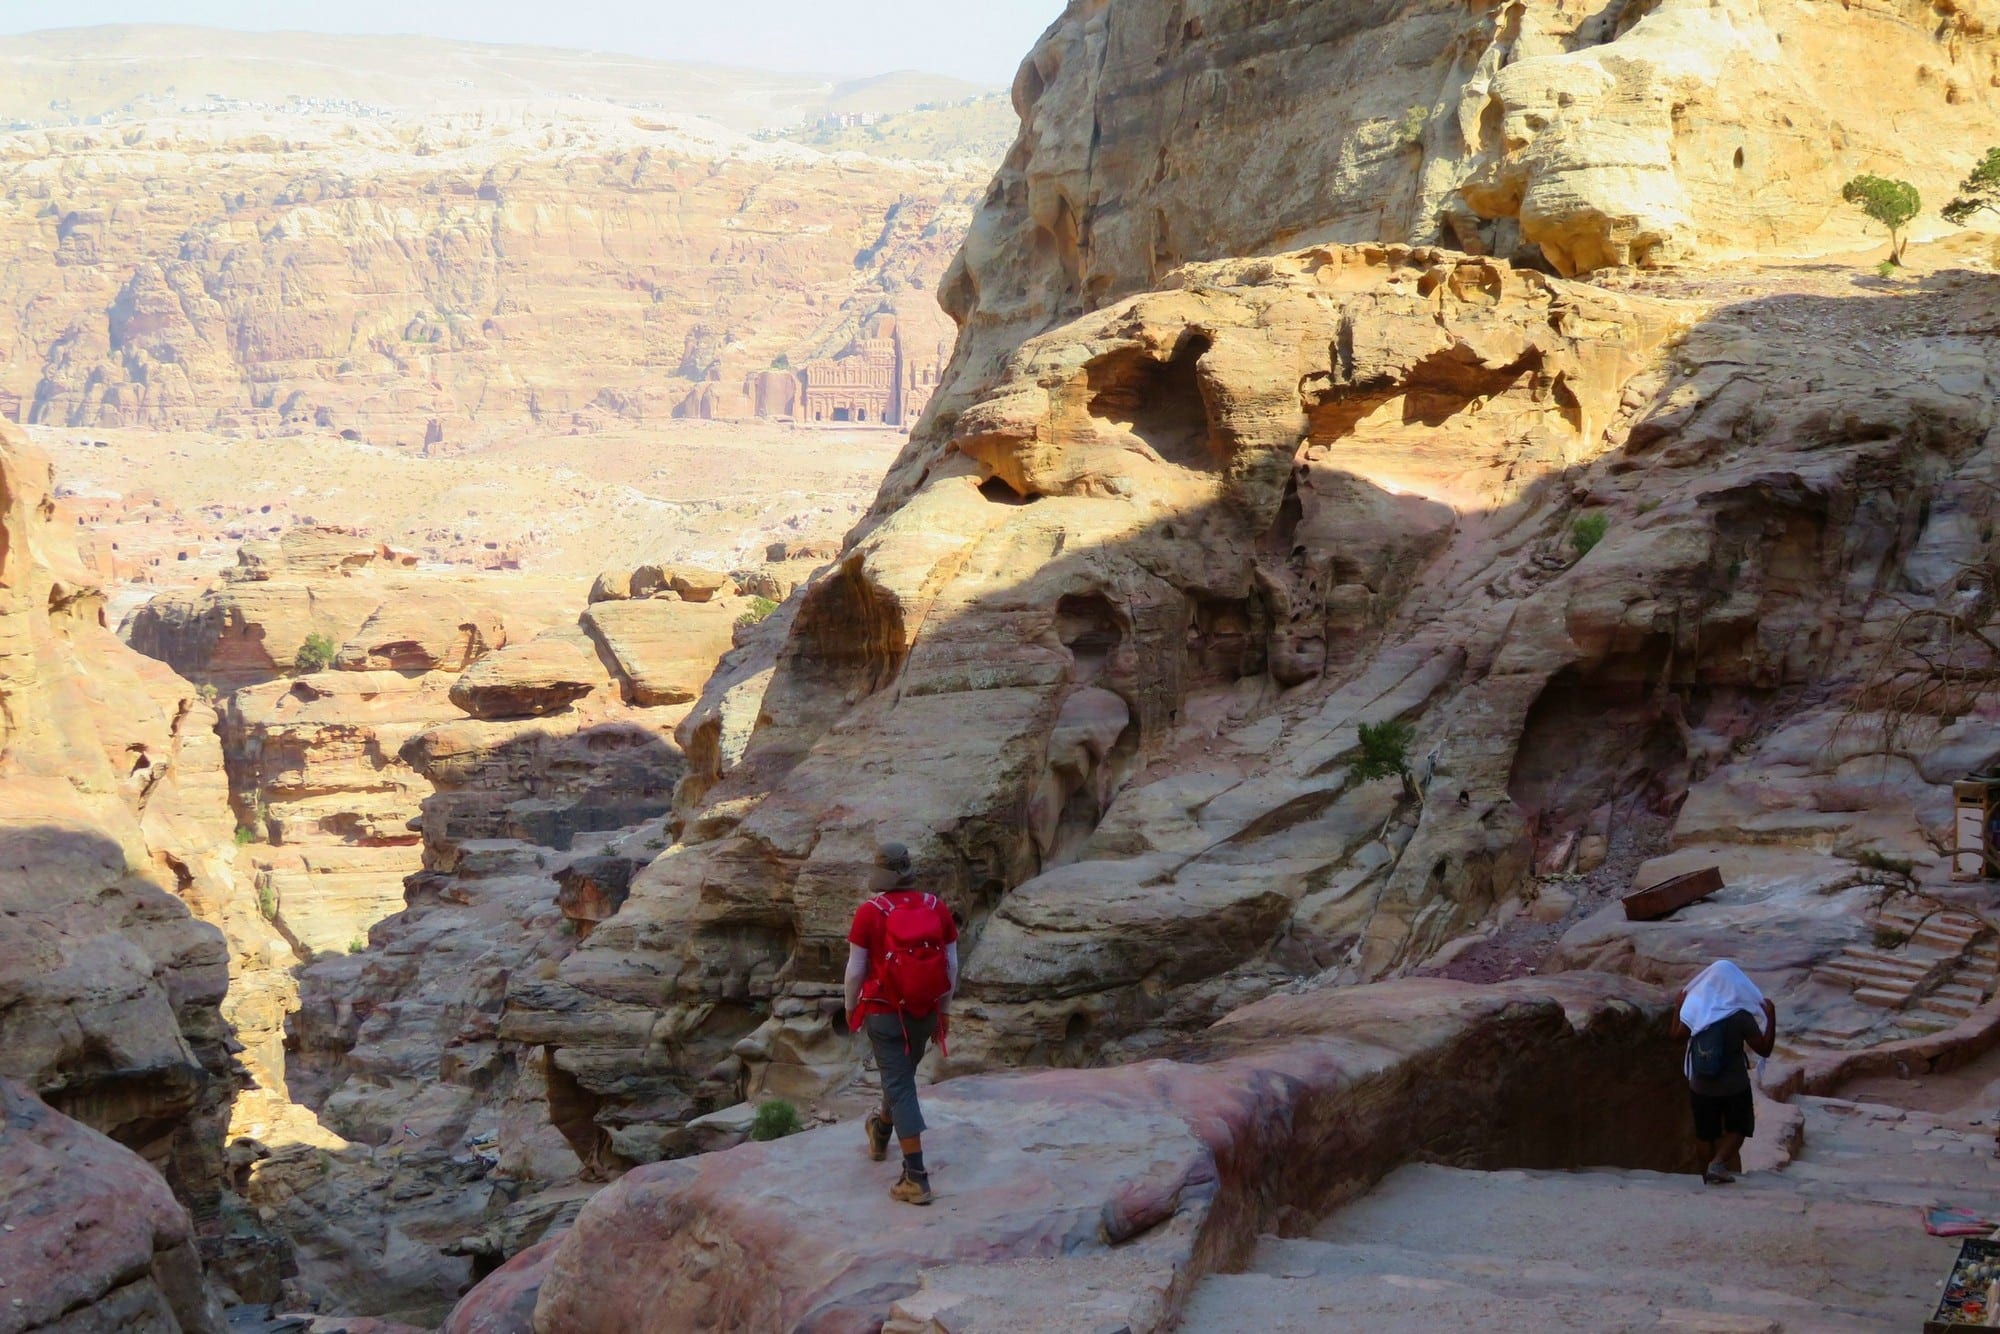 פטרה הקטנה - Little Petra - טיול בירדן | ערוצים בטבע